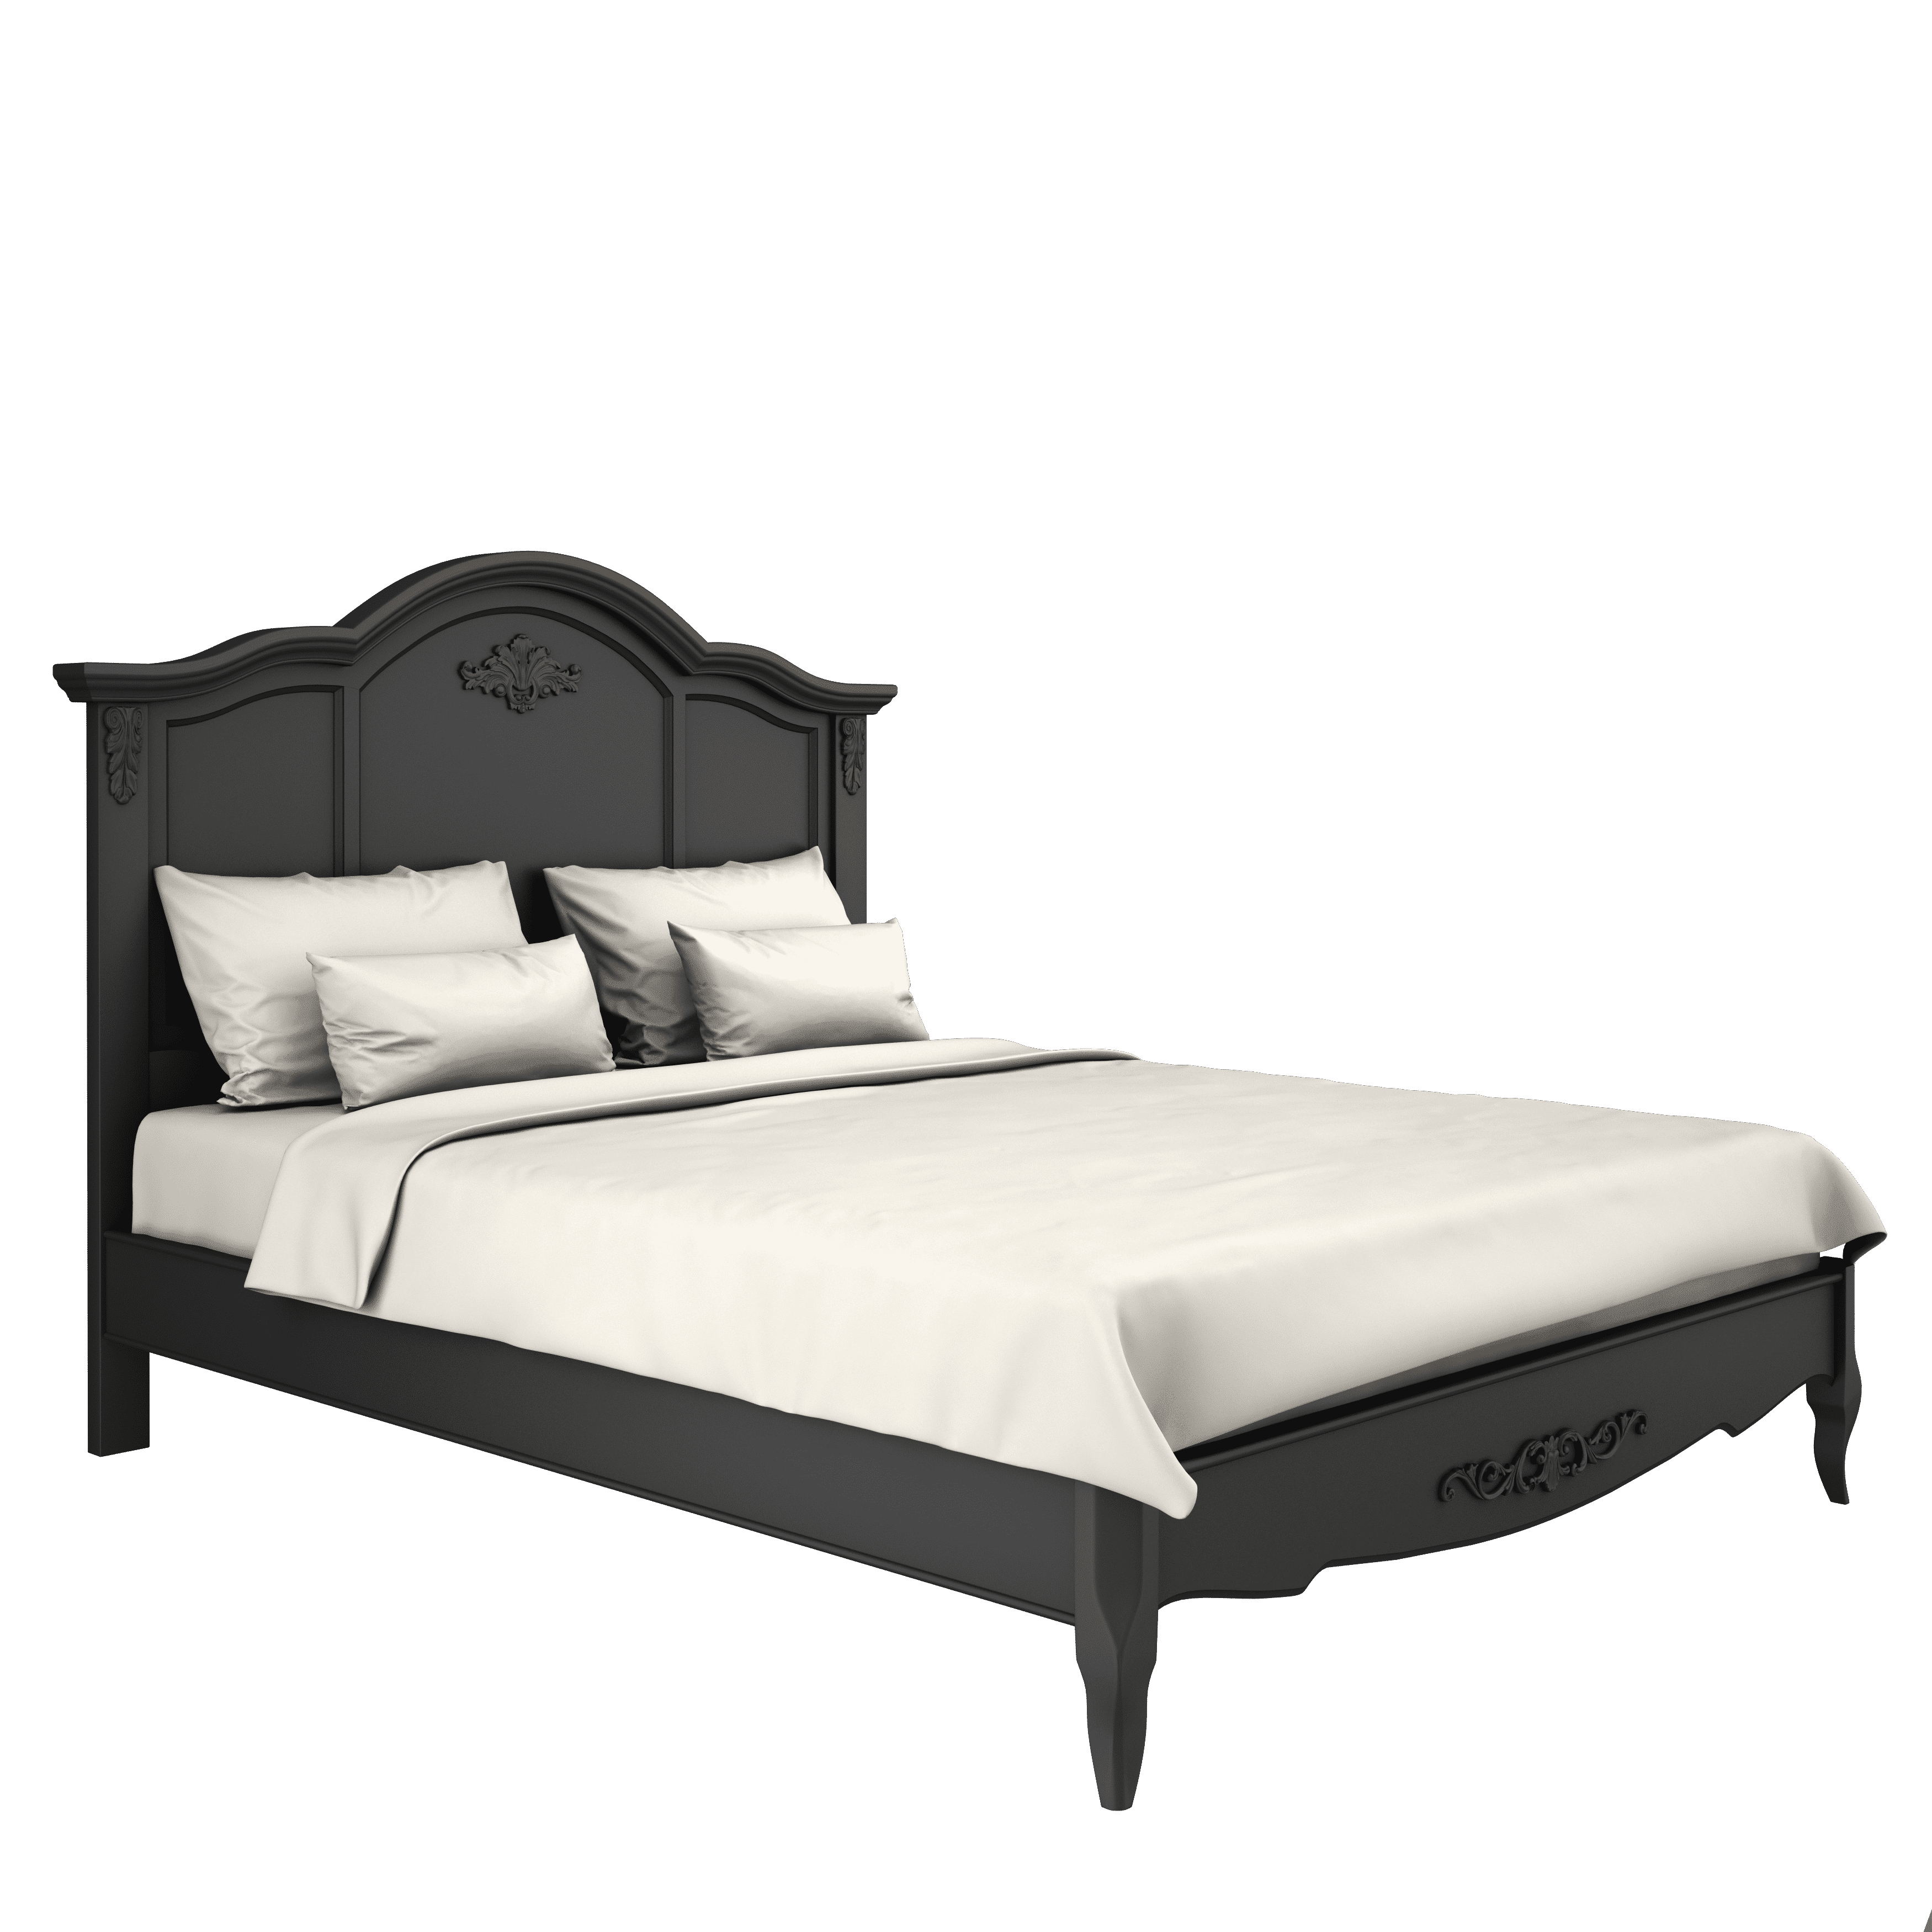 Кровать Marseille Night, двуспальная, 180x200 см, цвет: черный (B208BL)B208BL